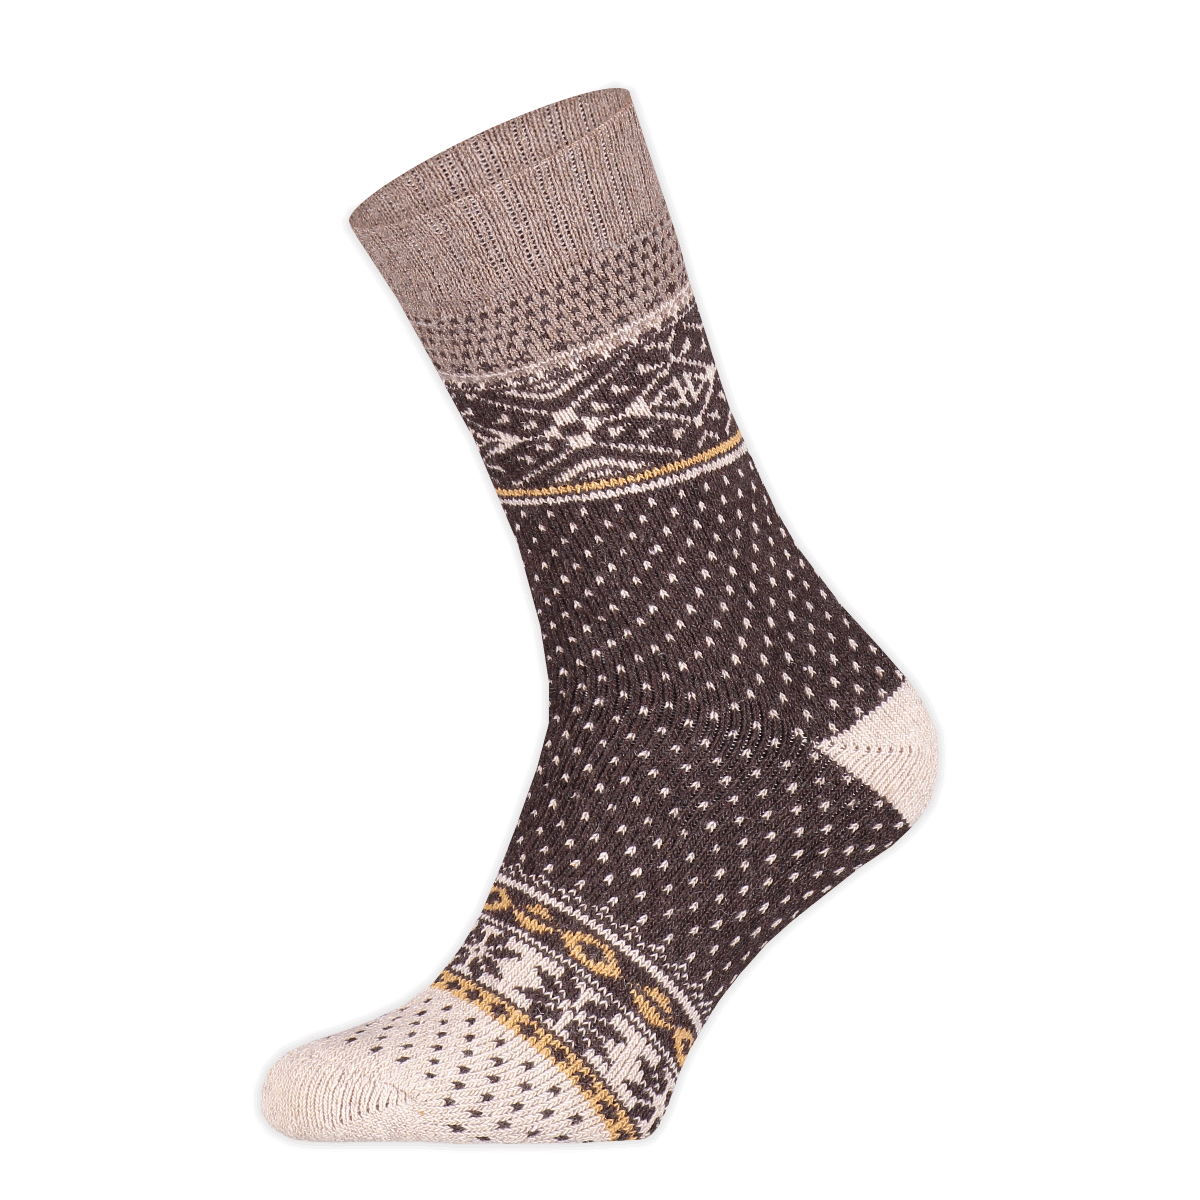 Basset - Heren - Wollen Nordic Socks - Herensokken - Winter - 45% Wol - Maat 43/46 - Bruin